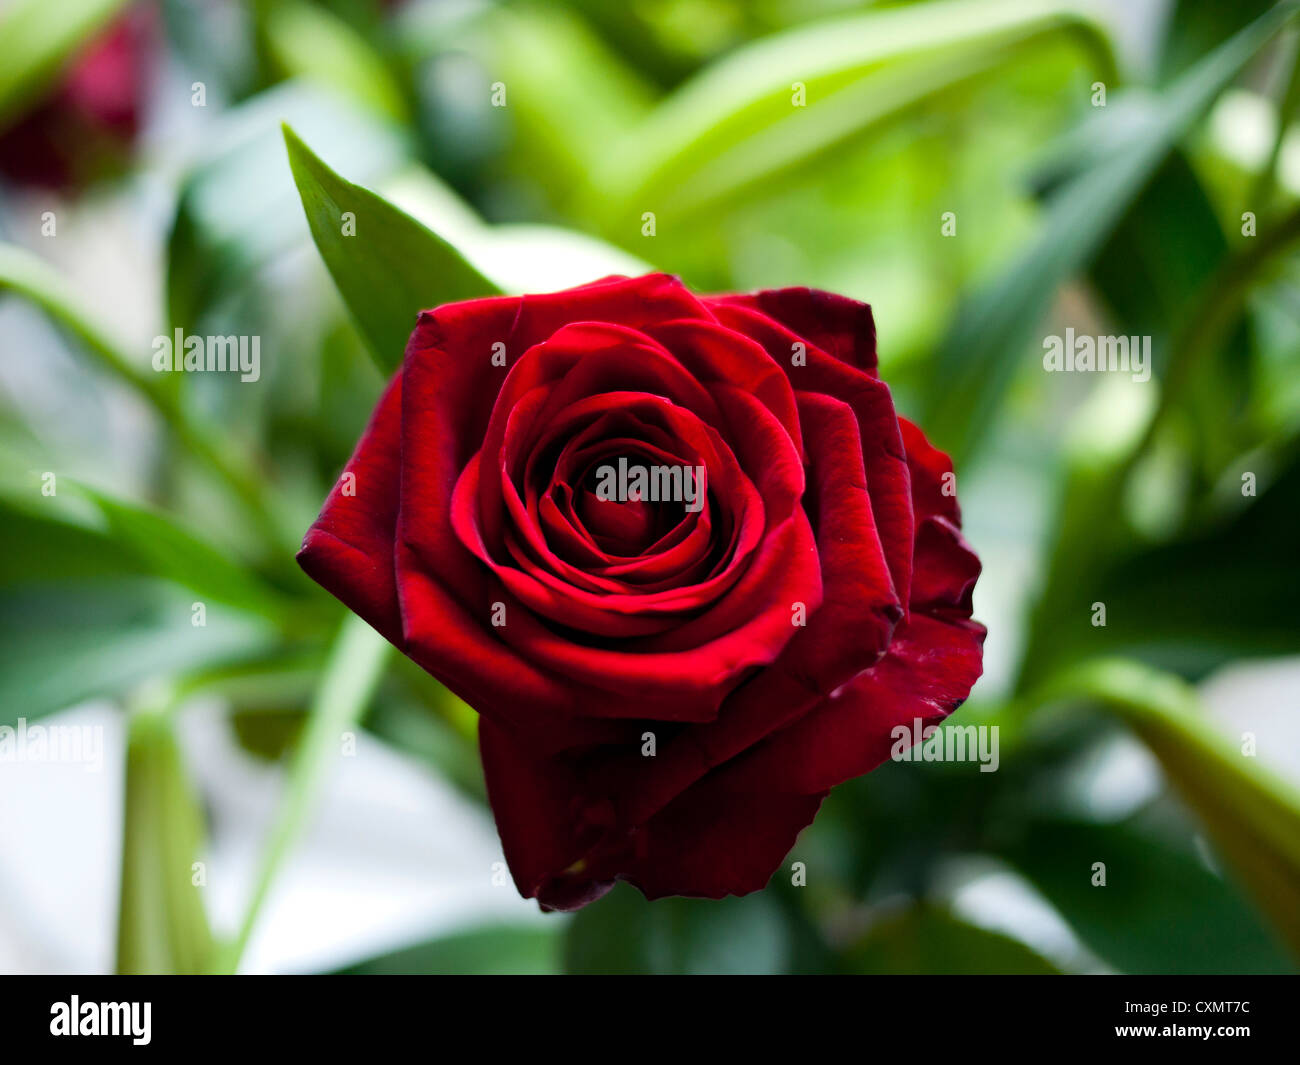 Red Rose.England, UK Stock Photo - Alamy